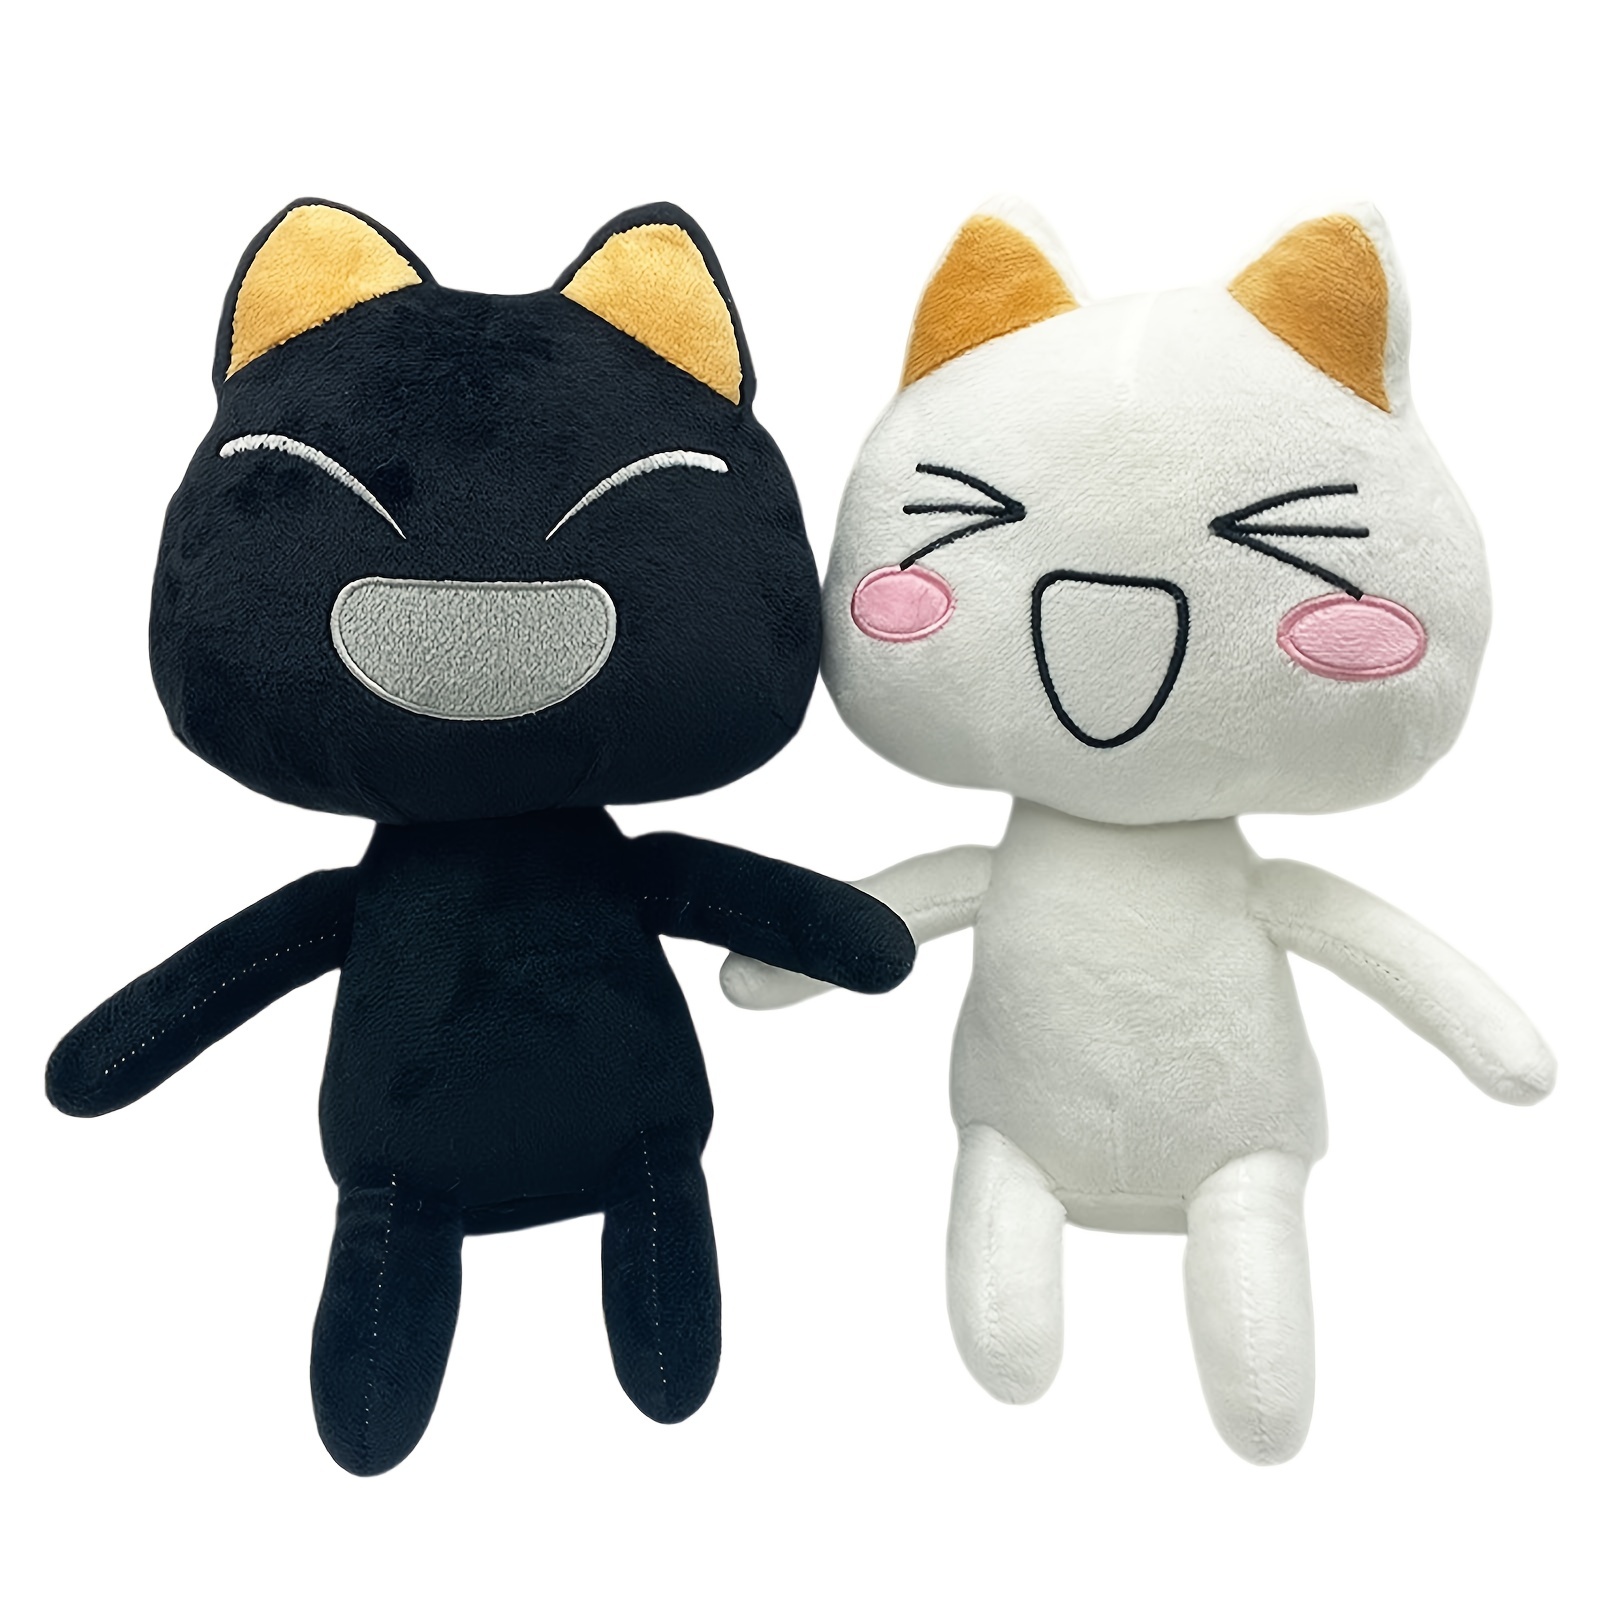 Fabriqué En Japon Réaliste Chat Jouet en Peluche Blackcat L Oeil